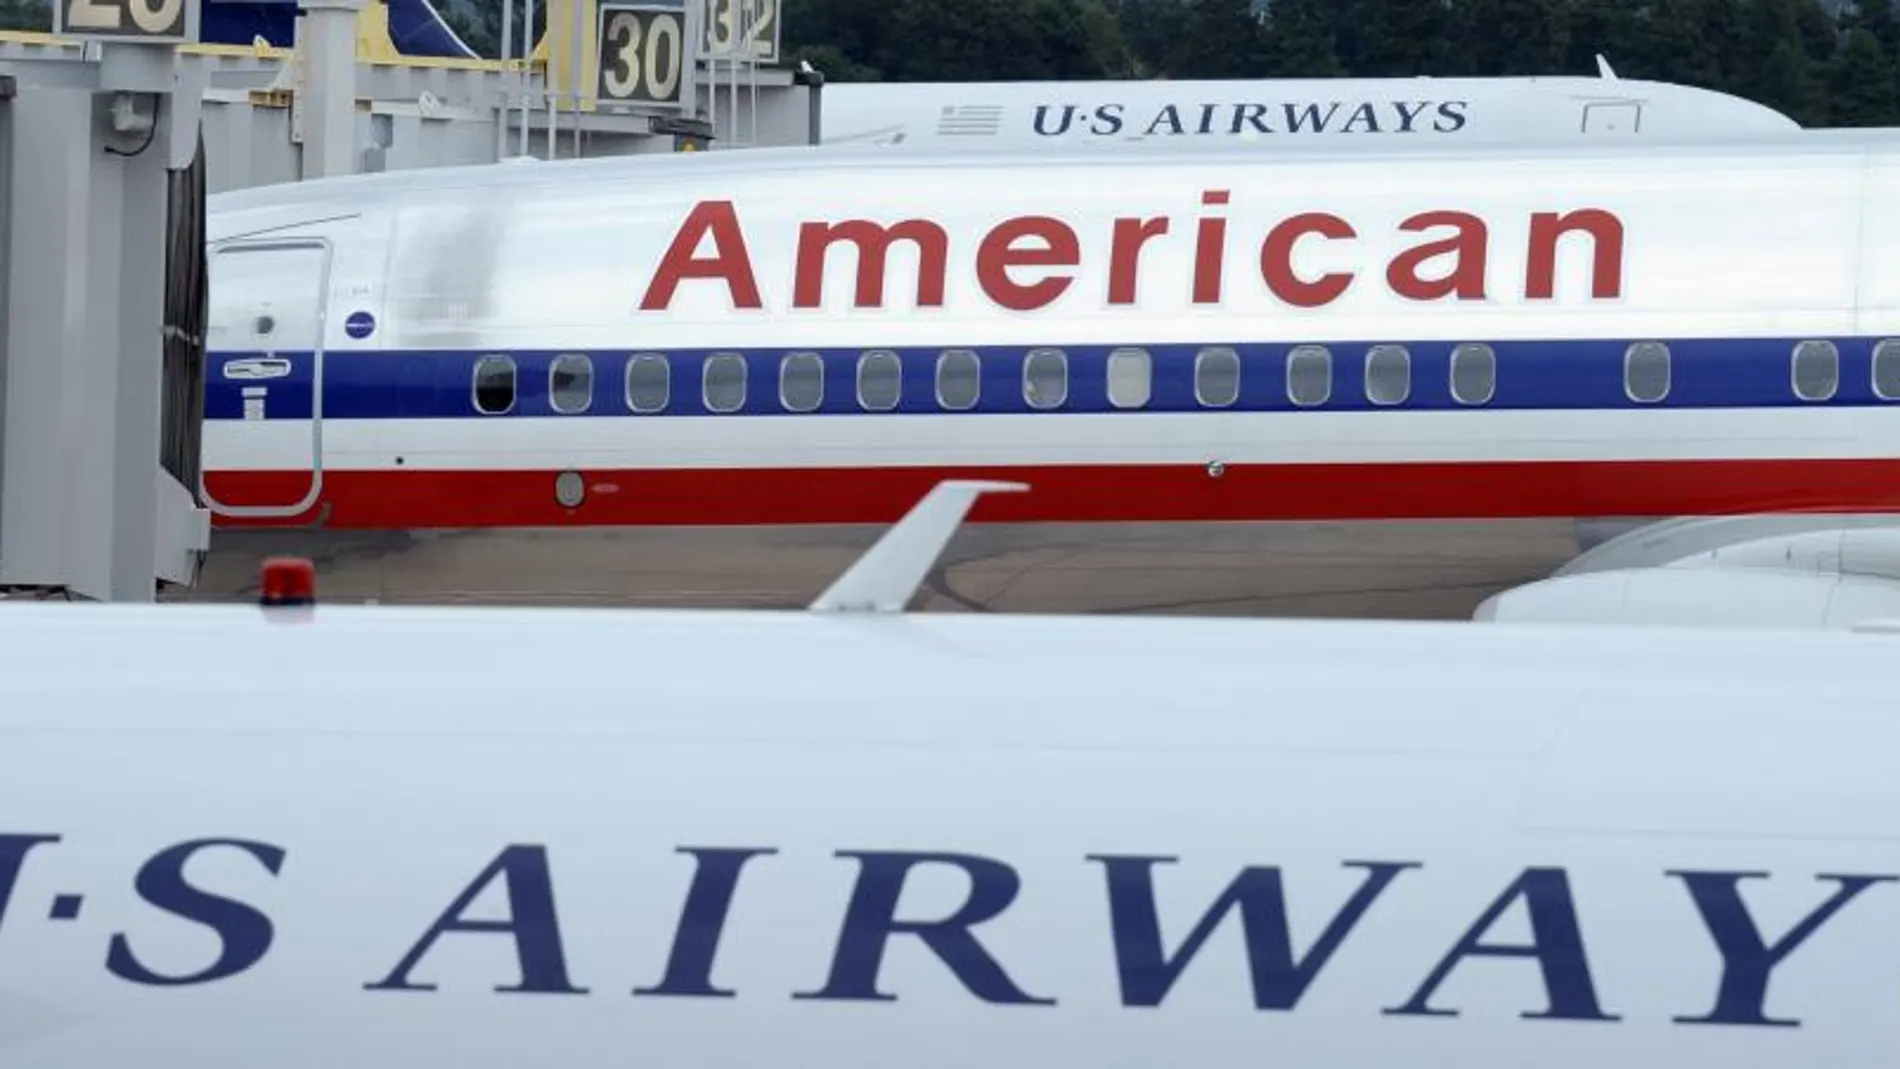 Imagen de dos avines de las compañías American Airlines y US Airways